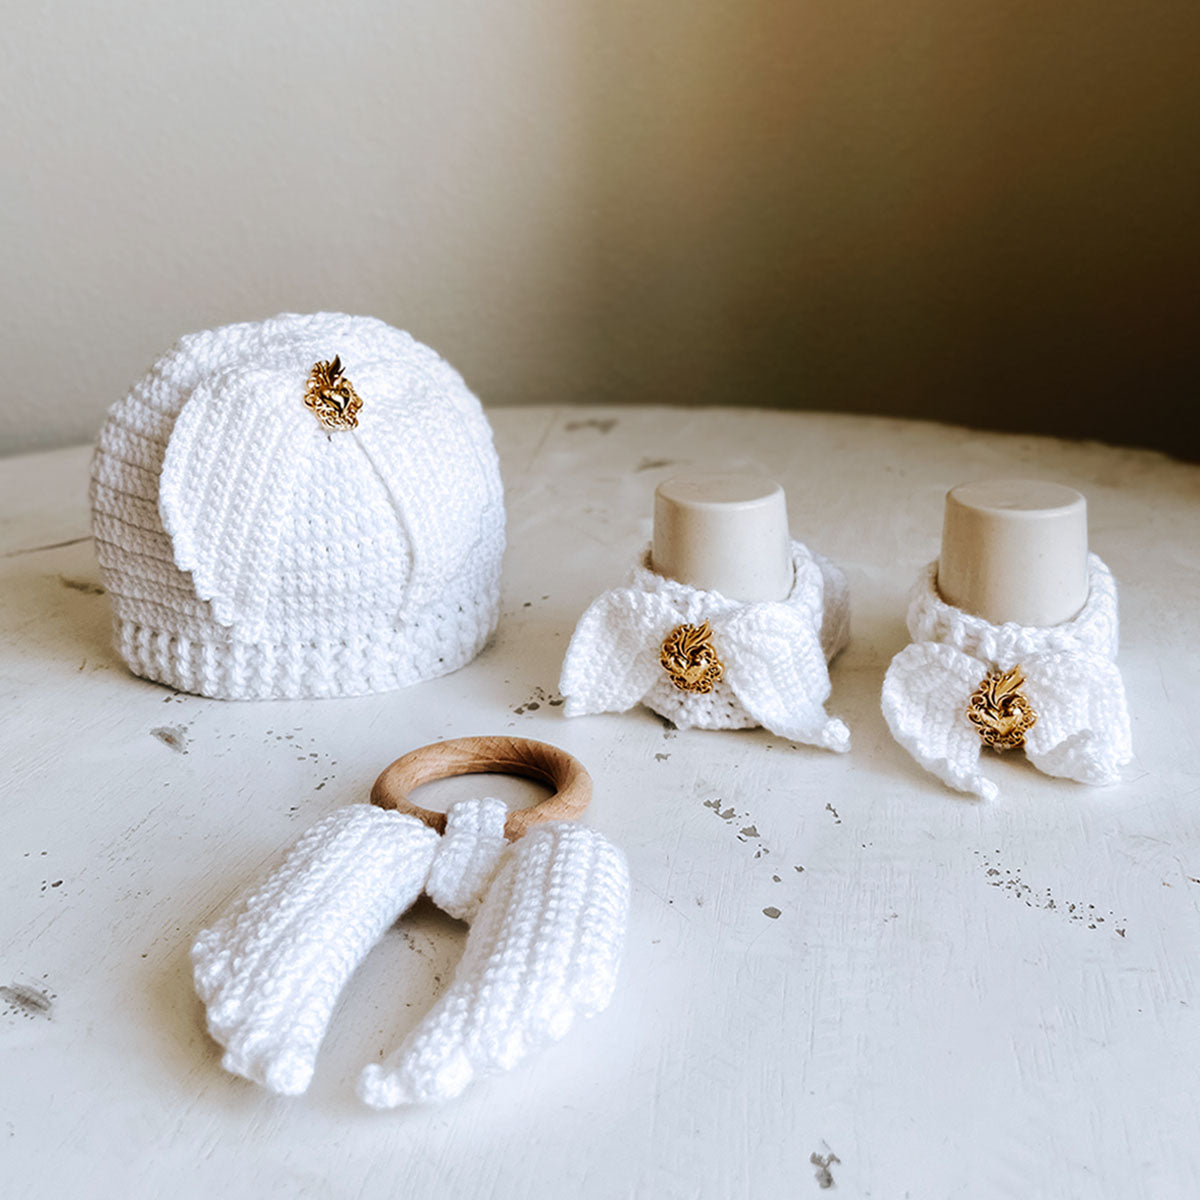 Angel Baby Crochet Newborn Gift Set - Hat, Booties & Teether